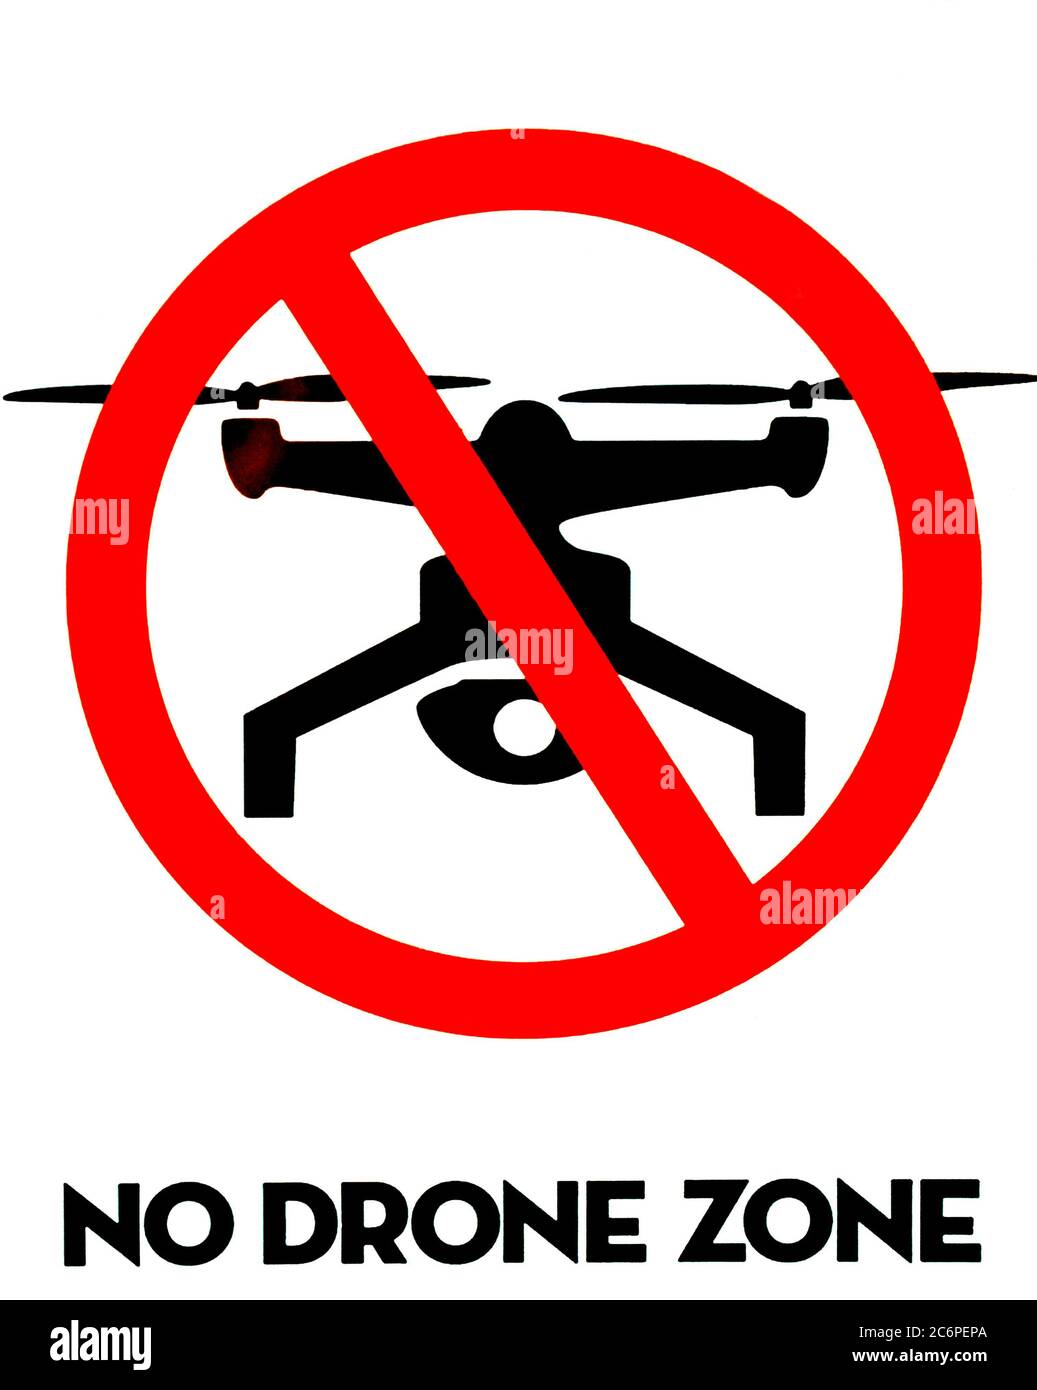 Señal de información de advertencia de zona prohibida de drones Fotografía stock Alamy